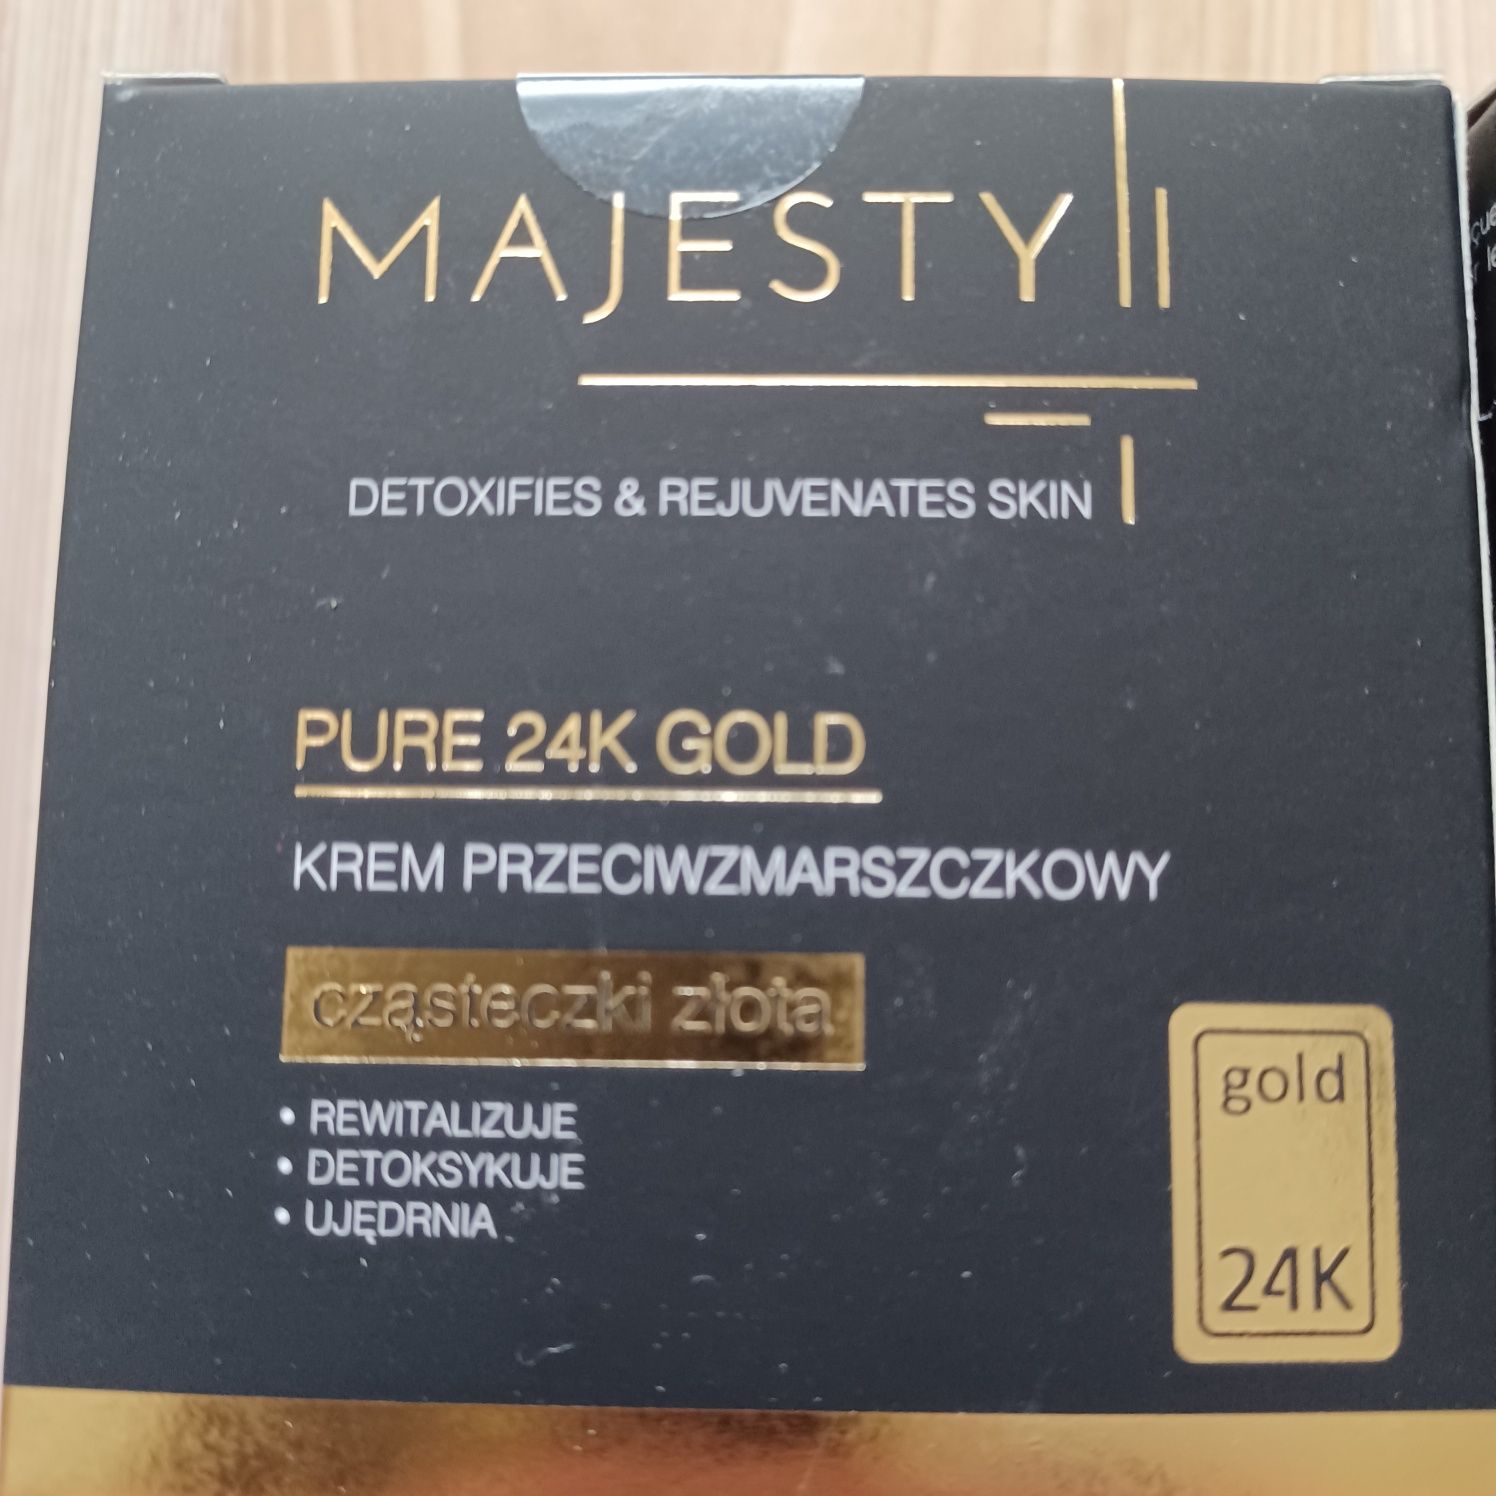 Krem Majesty GOLD przeciwzmarszczkowy z 24 K złotem/-80% ceny